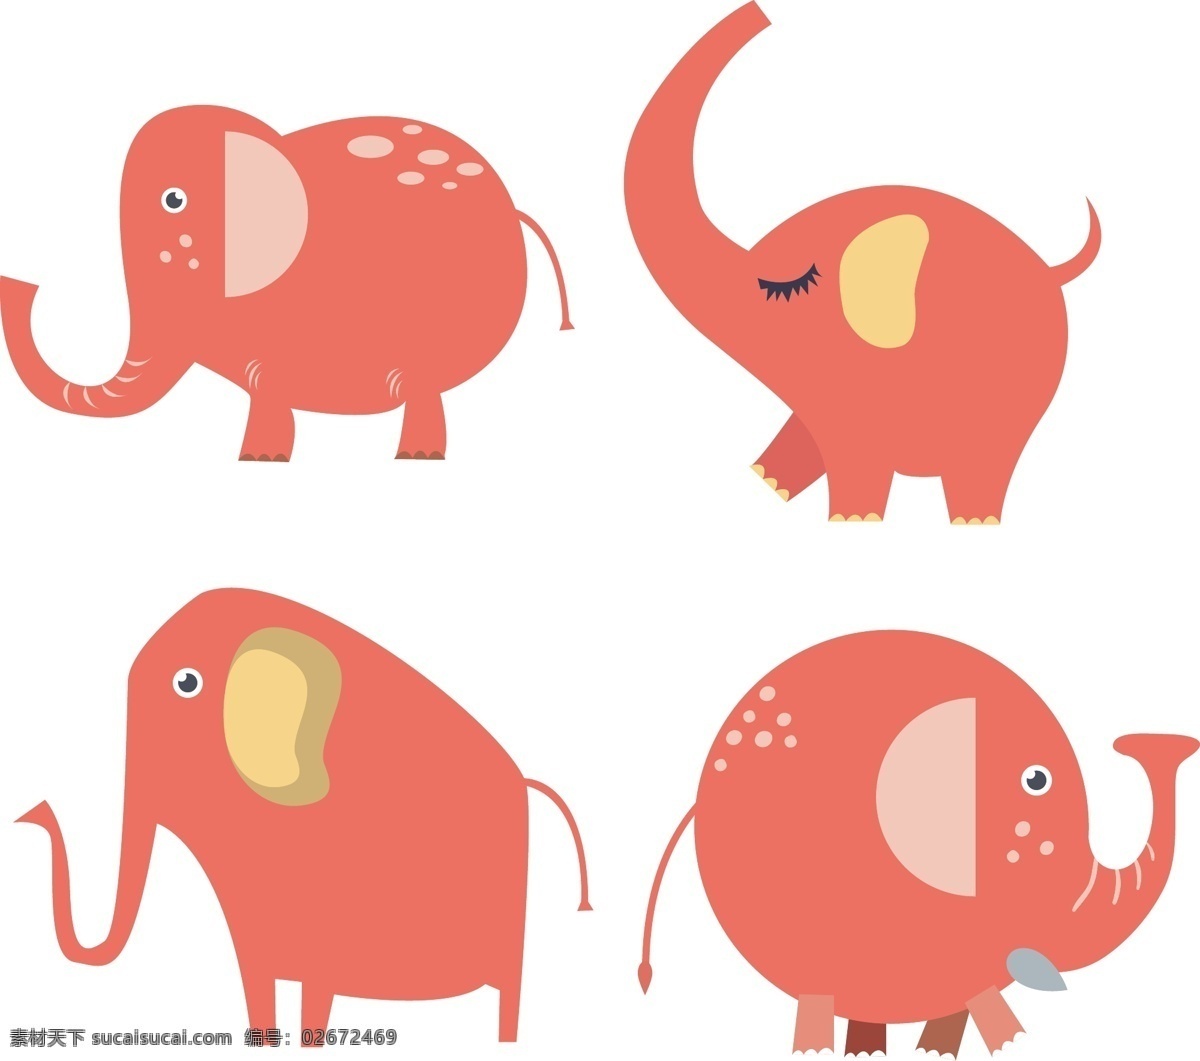 粉色 扁平化 大象 可爱 卡通 动物 扁平化大象 卡通大象 大象矢量 大象ai 手绘大象 彩绘大象 动物素材 动物矢量素材 动物矢量 生物世界 野生动物